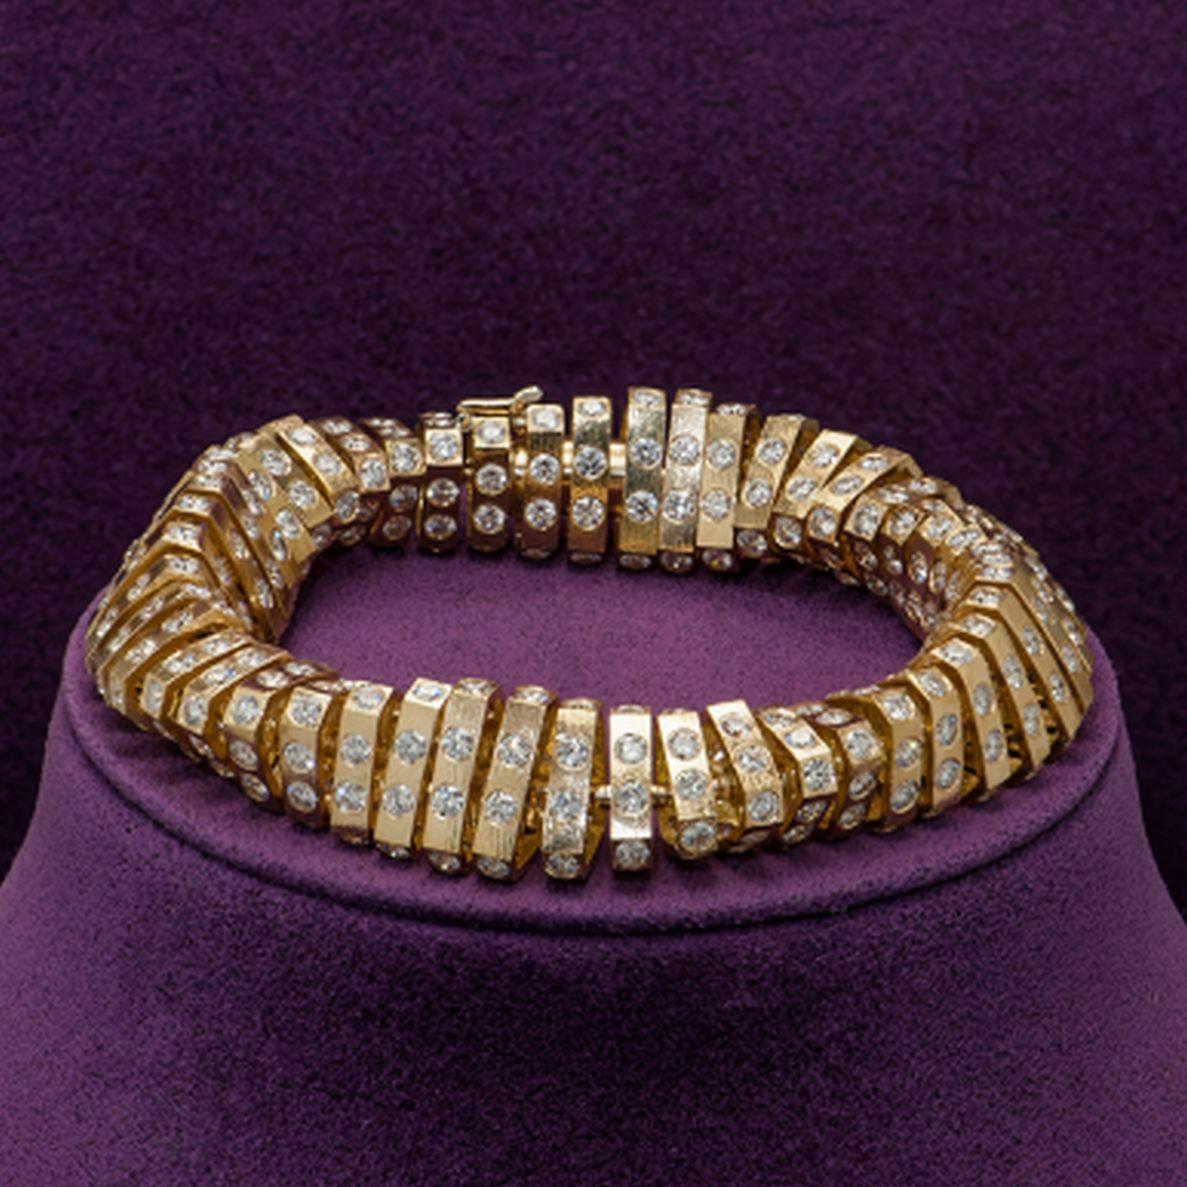 Tout simplement magnifique ! Bracelet exclusif en or jaune 18 carats avec diamants en spirale, comprenant plus de quatre cents diamants taille brillant sertis dans un élément individuel. S'enroulant doucement en spirale autour d'un cordon en or 18